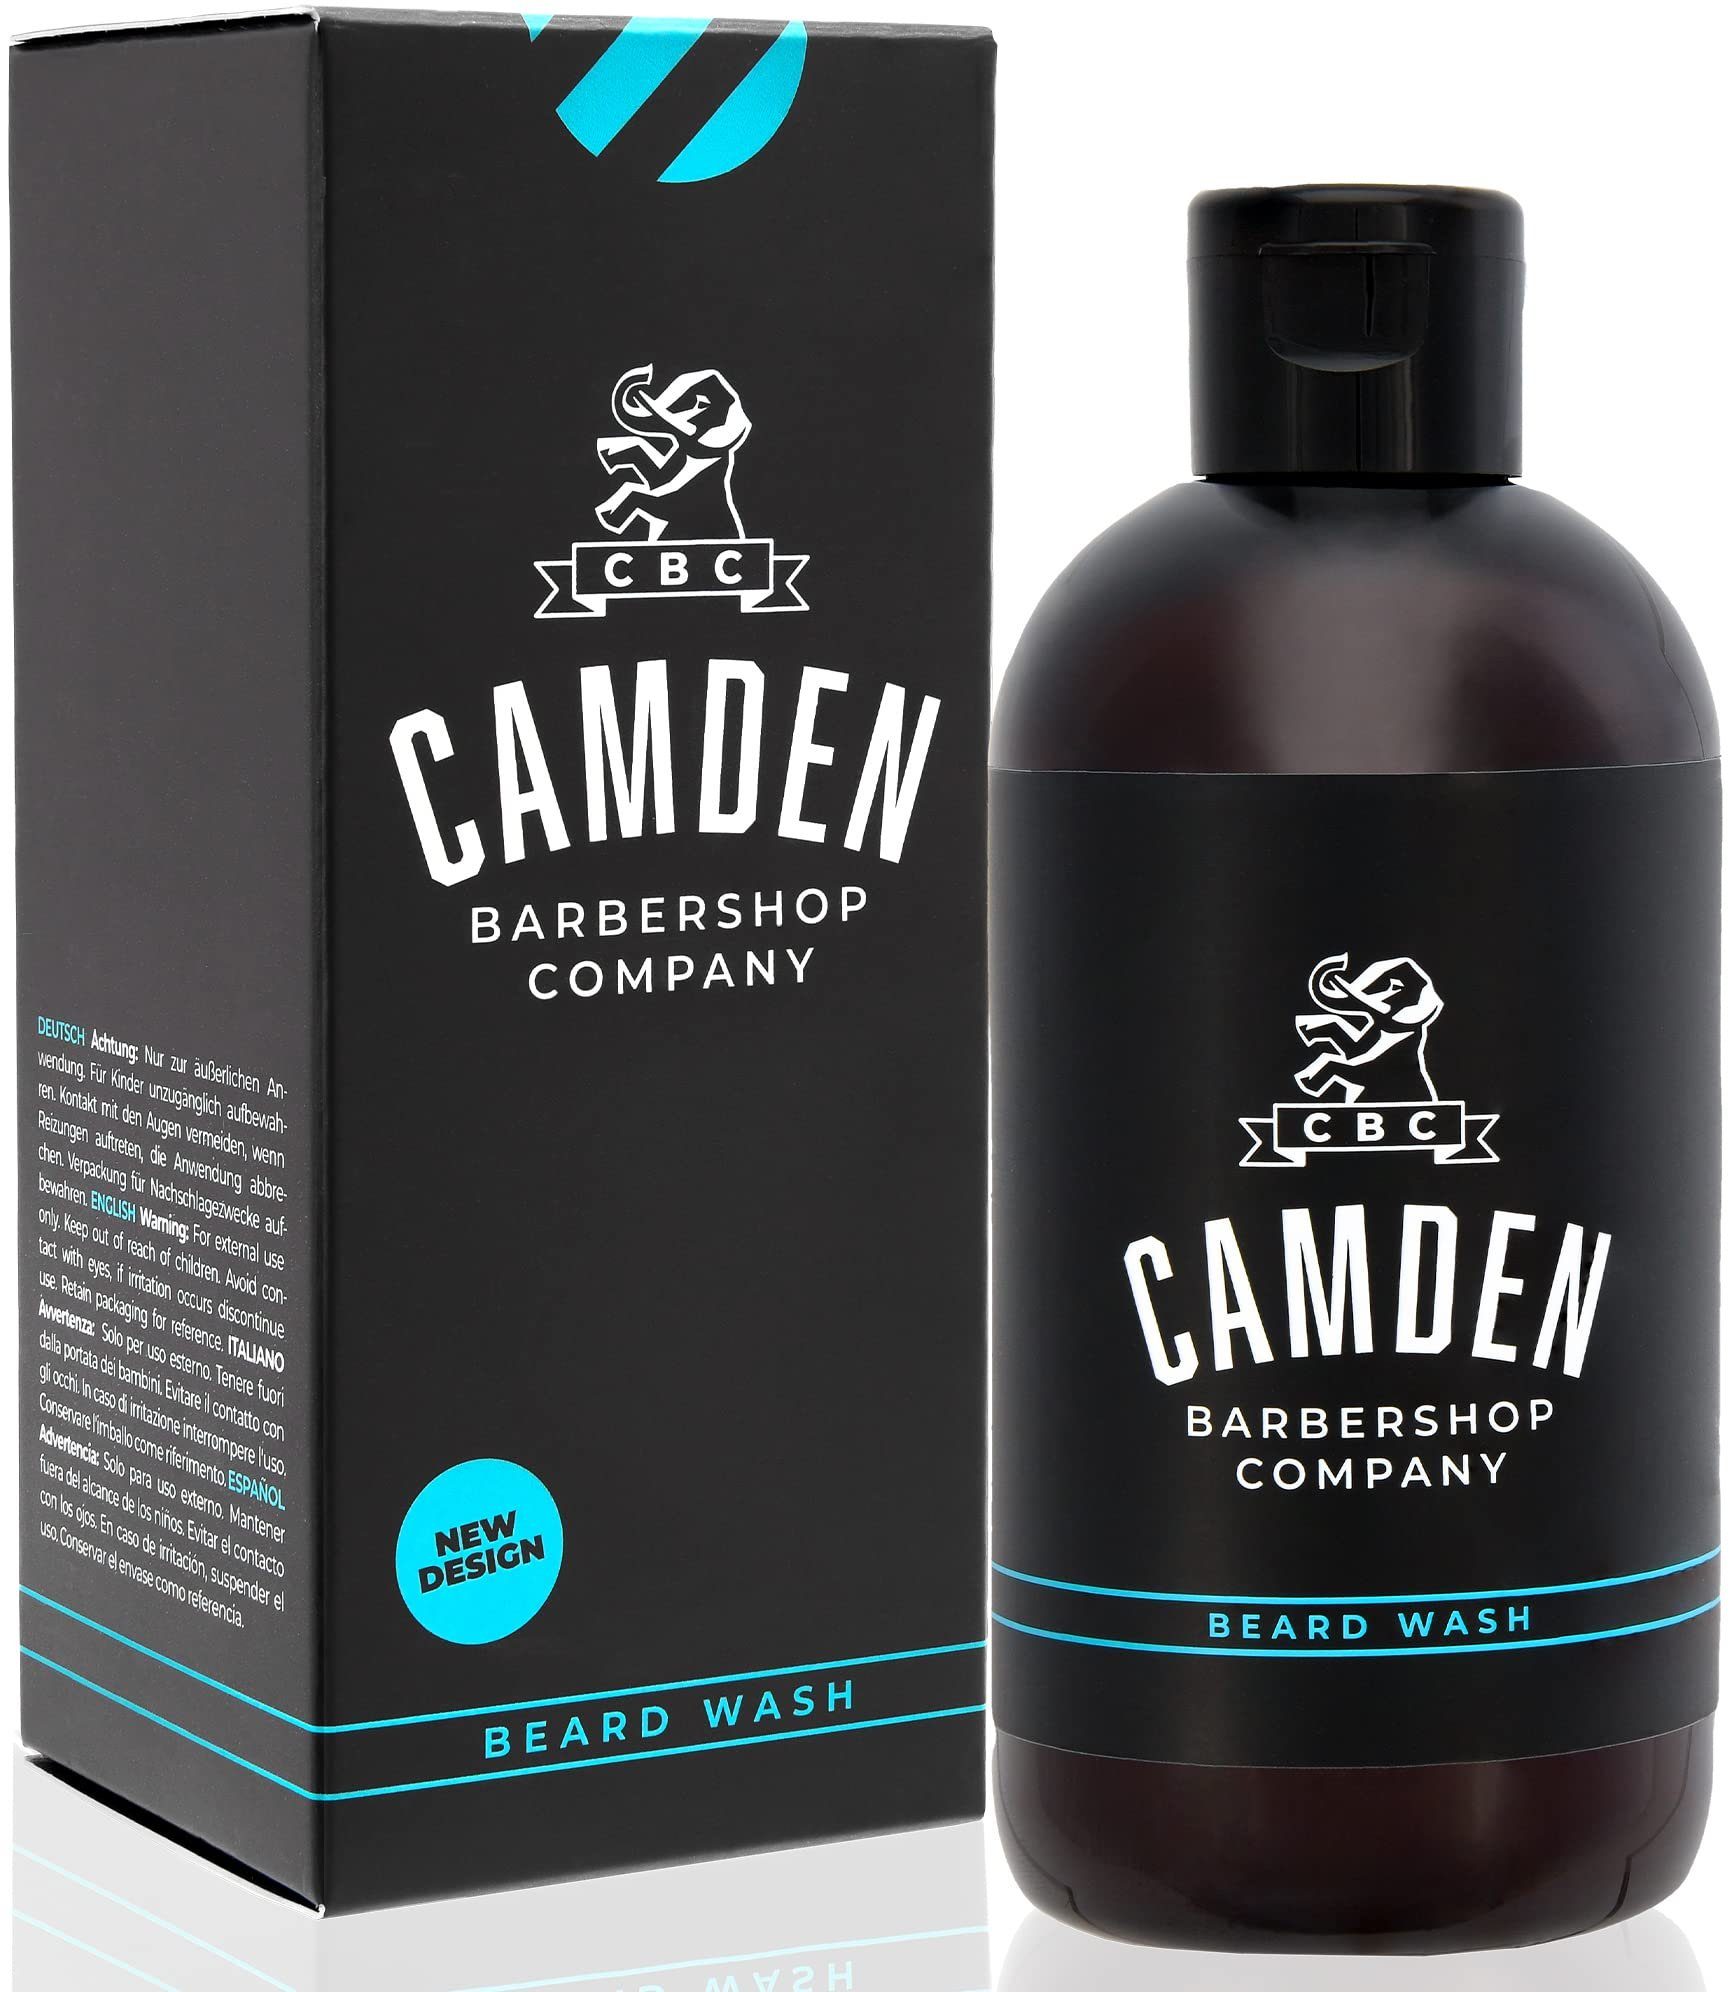 Camden Barbershop Gesichtsserum Camden Haarshampoo und Bartpflege - 250 ml, Camden 2in1 Bartshampoo - 250 ml